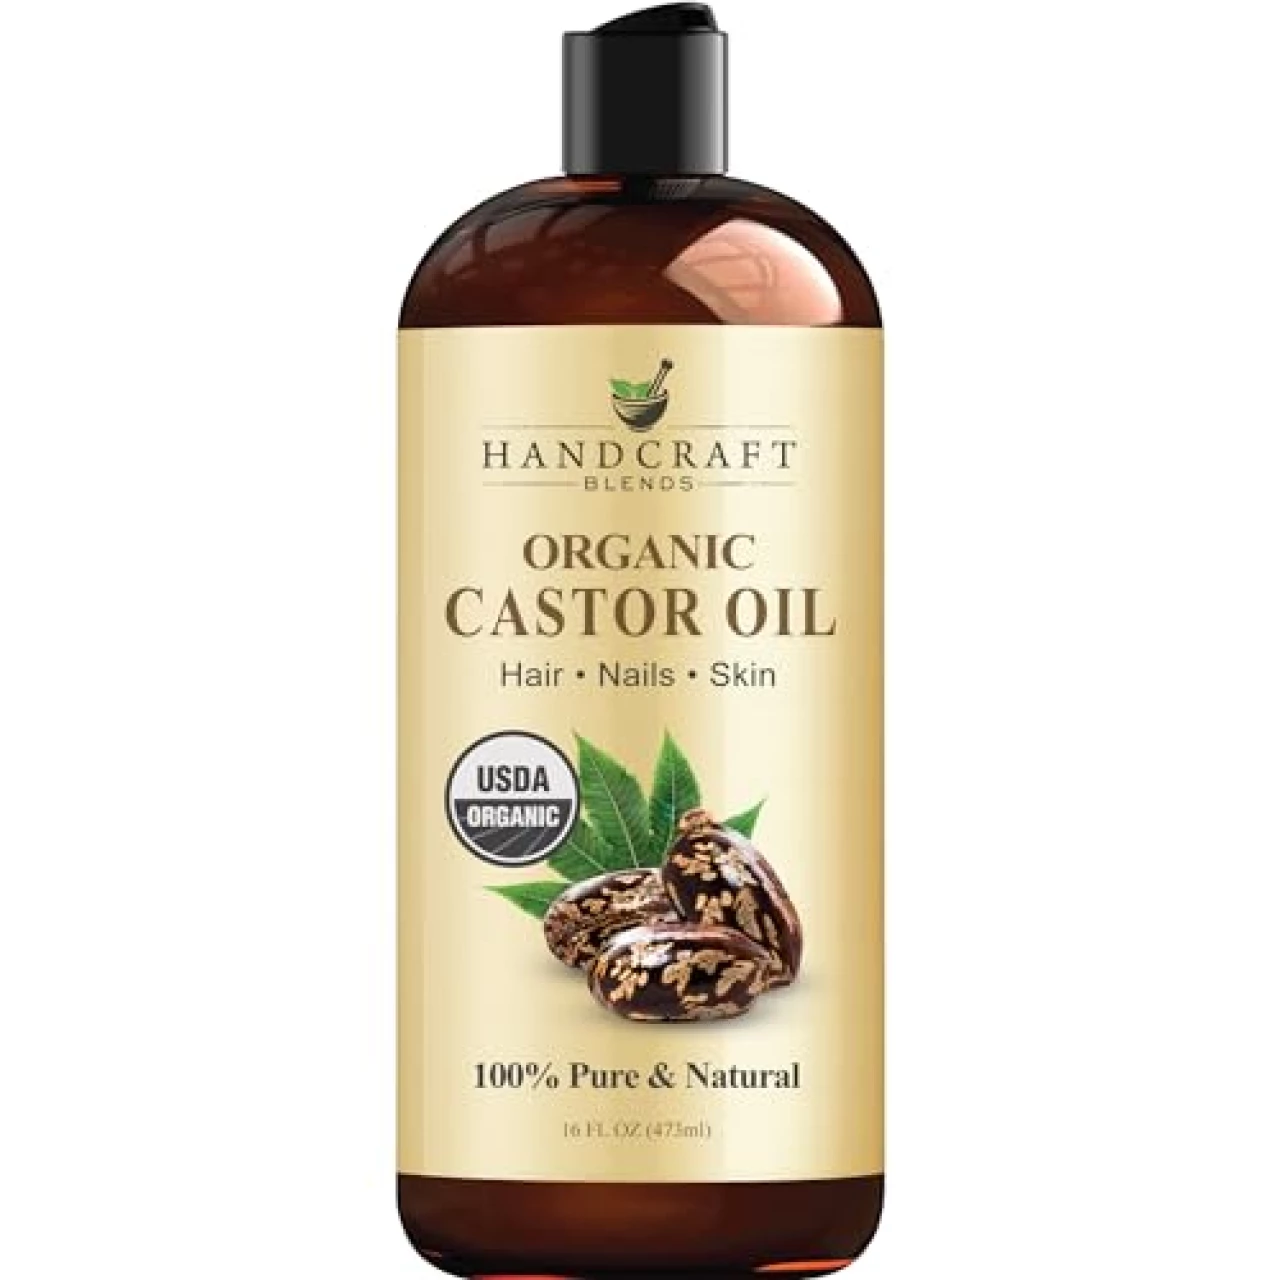 Handcraft Organic Castor Oil